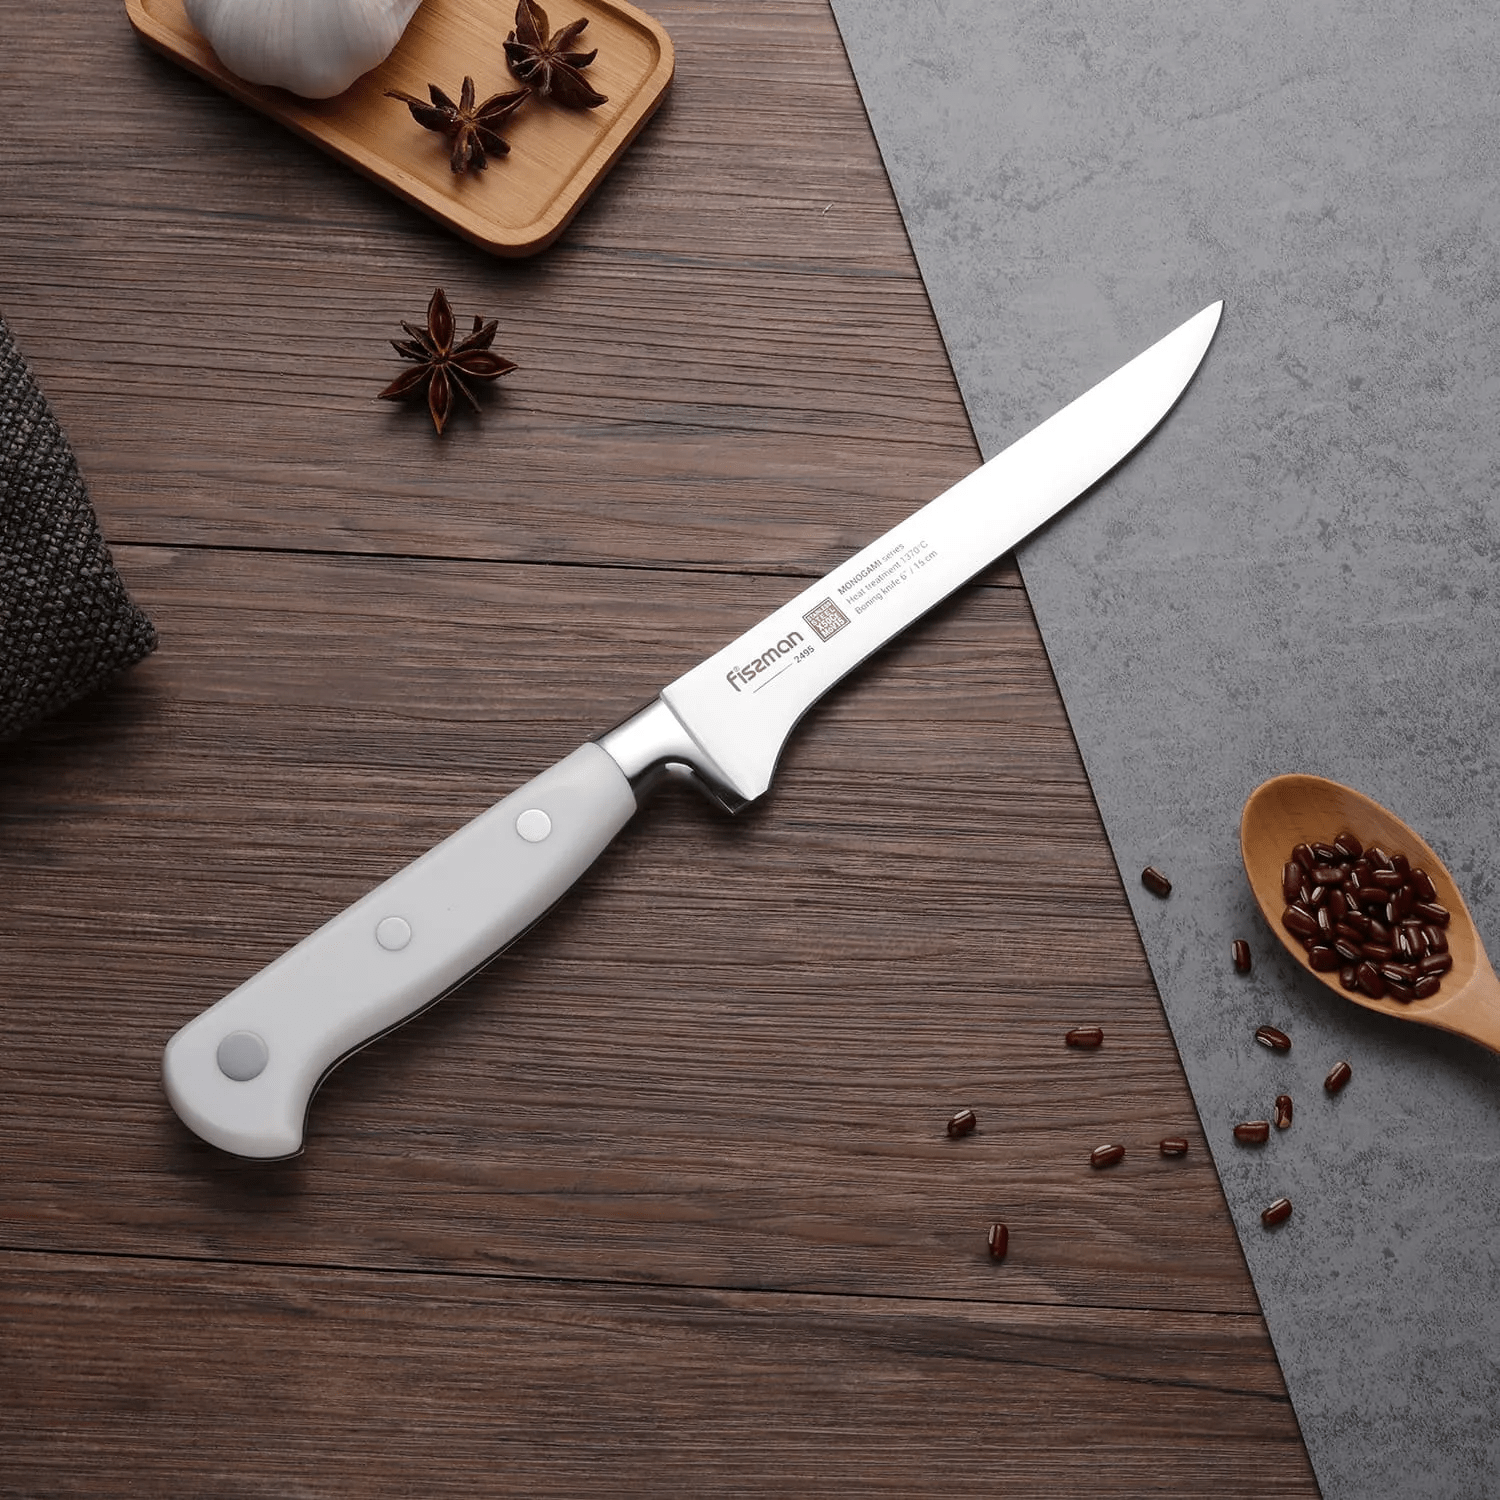 Обвалочный нож: что это такое и для чего он нужен?